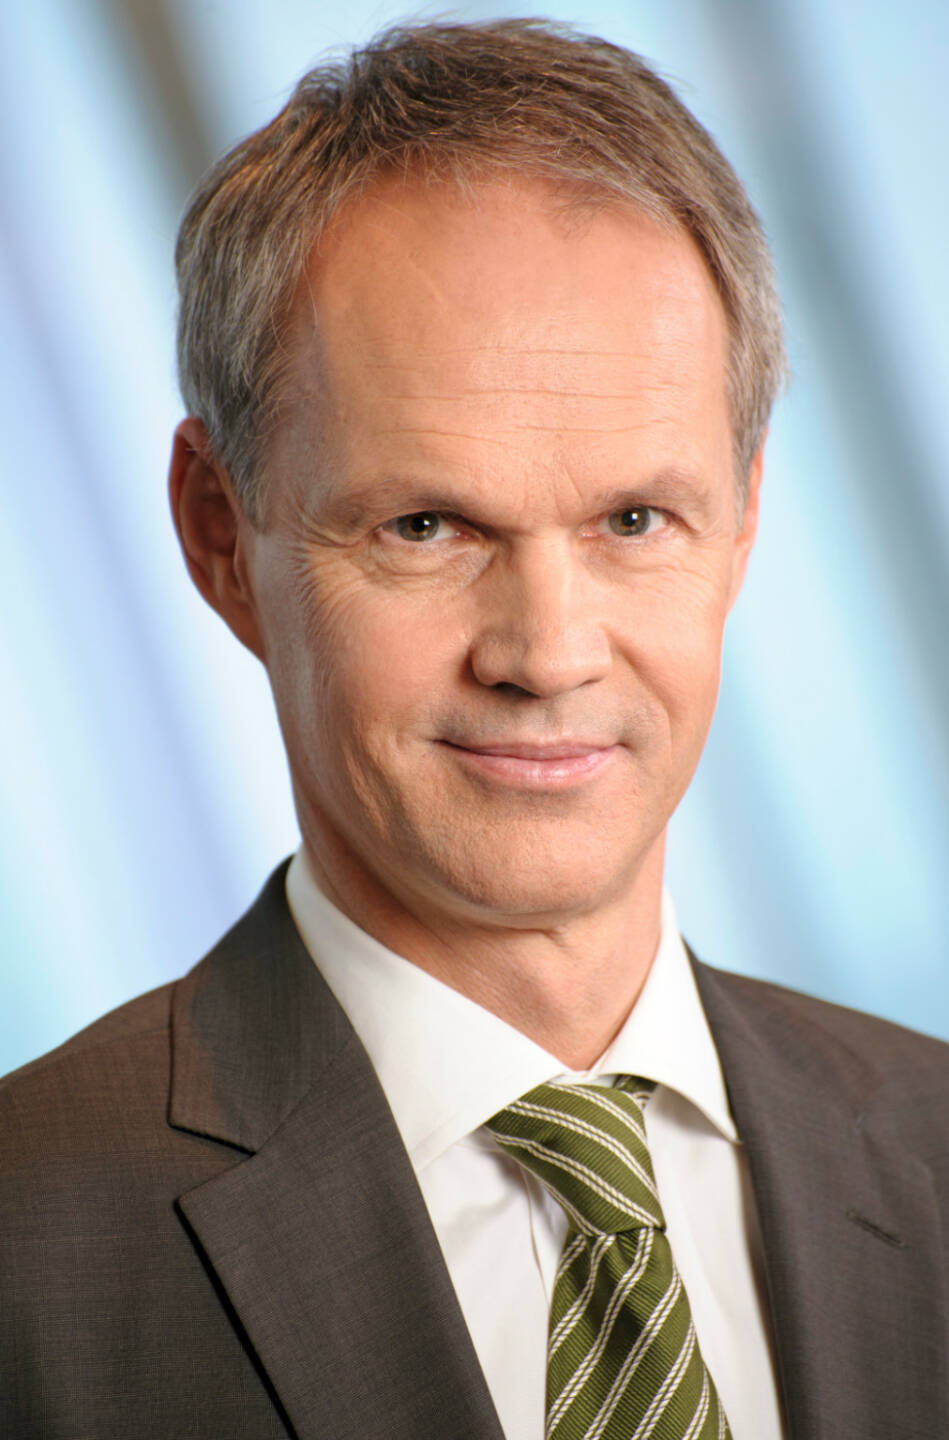 Martin Grüll, CFO RBI (25. Oktober), finanzmarktfoto.at wünscht alles Gute!